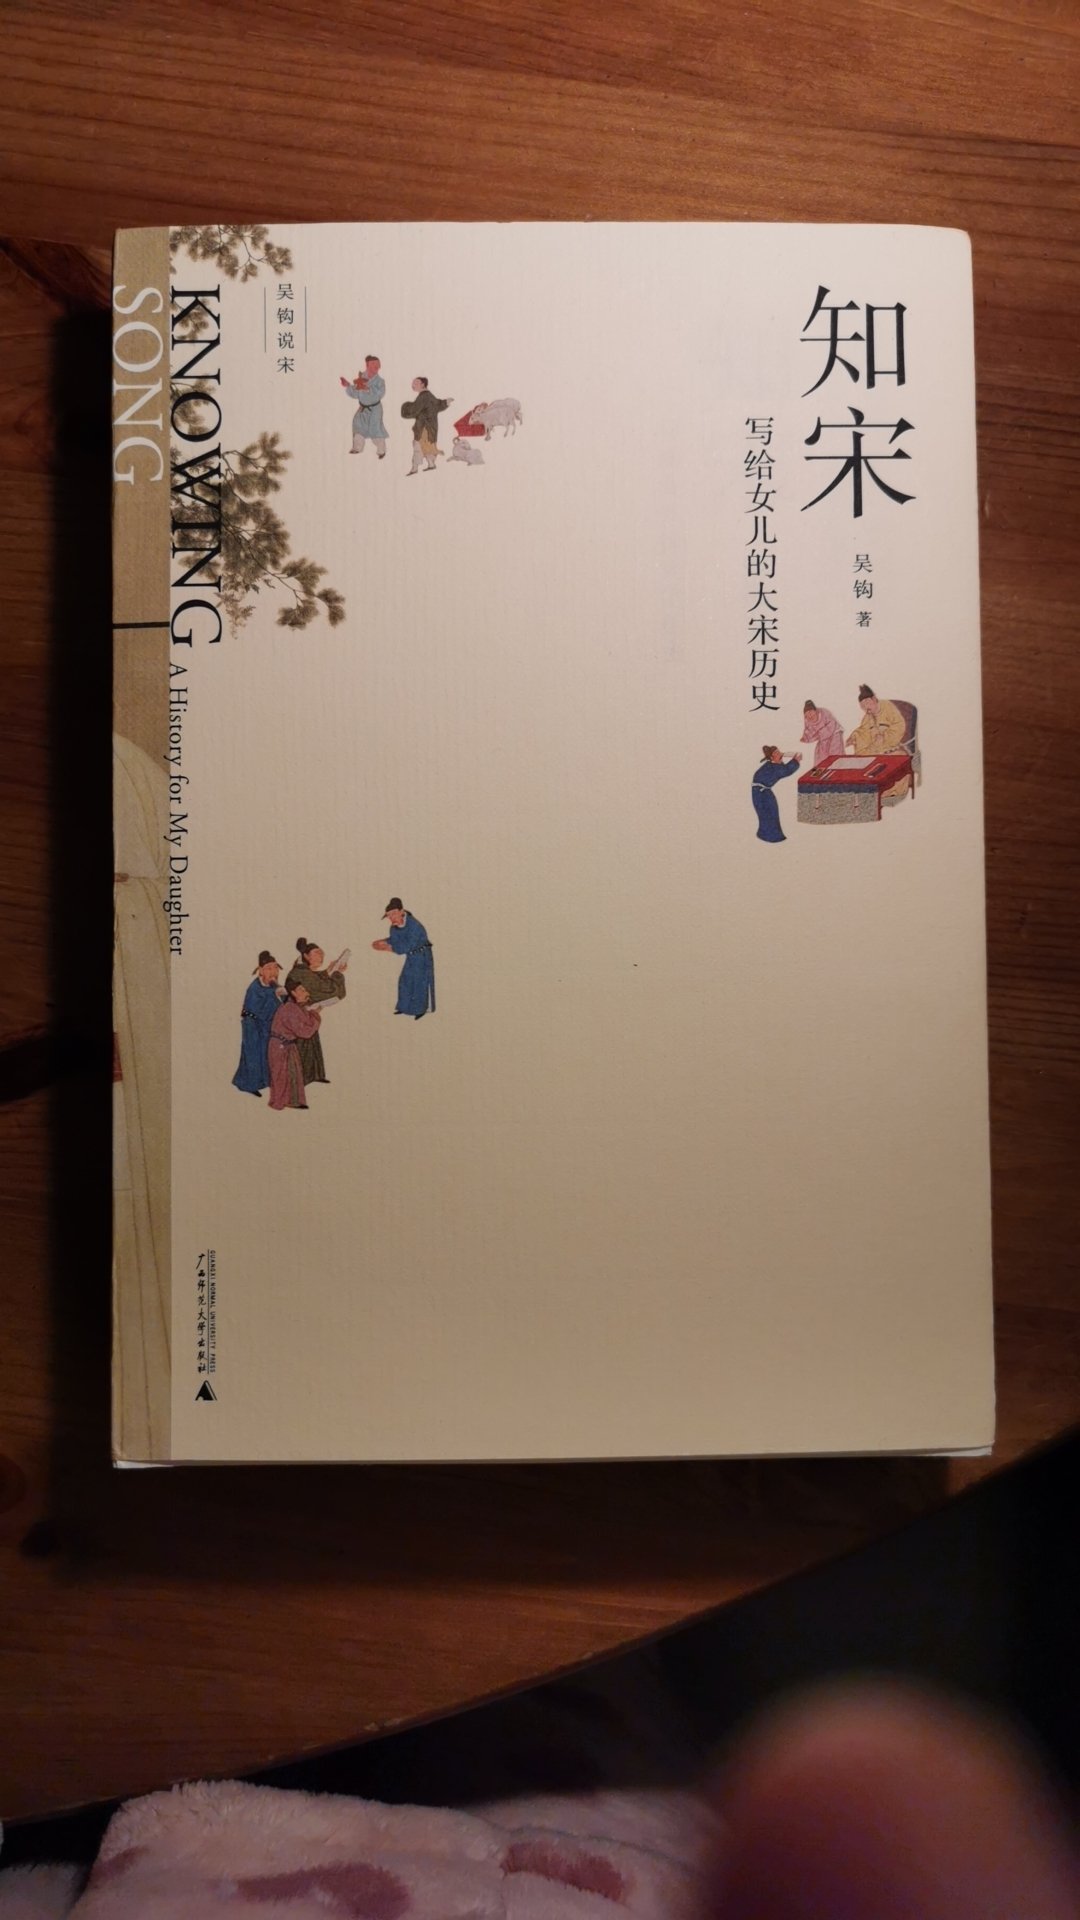 漂亮的一本小书，宋朝的历史，我很感兴趣，准备有时间在五一假期认真的读一读